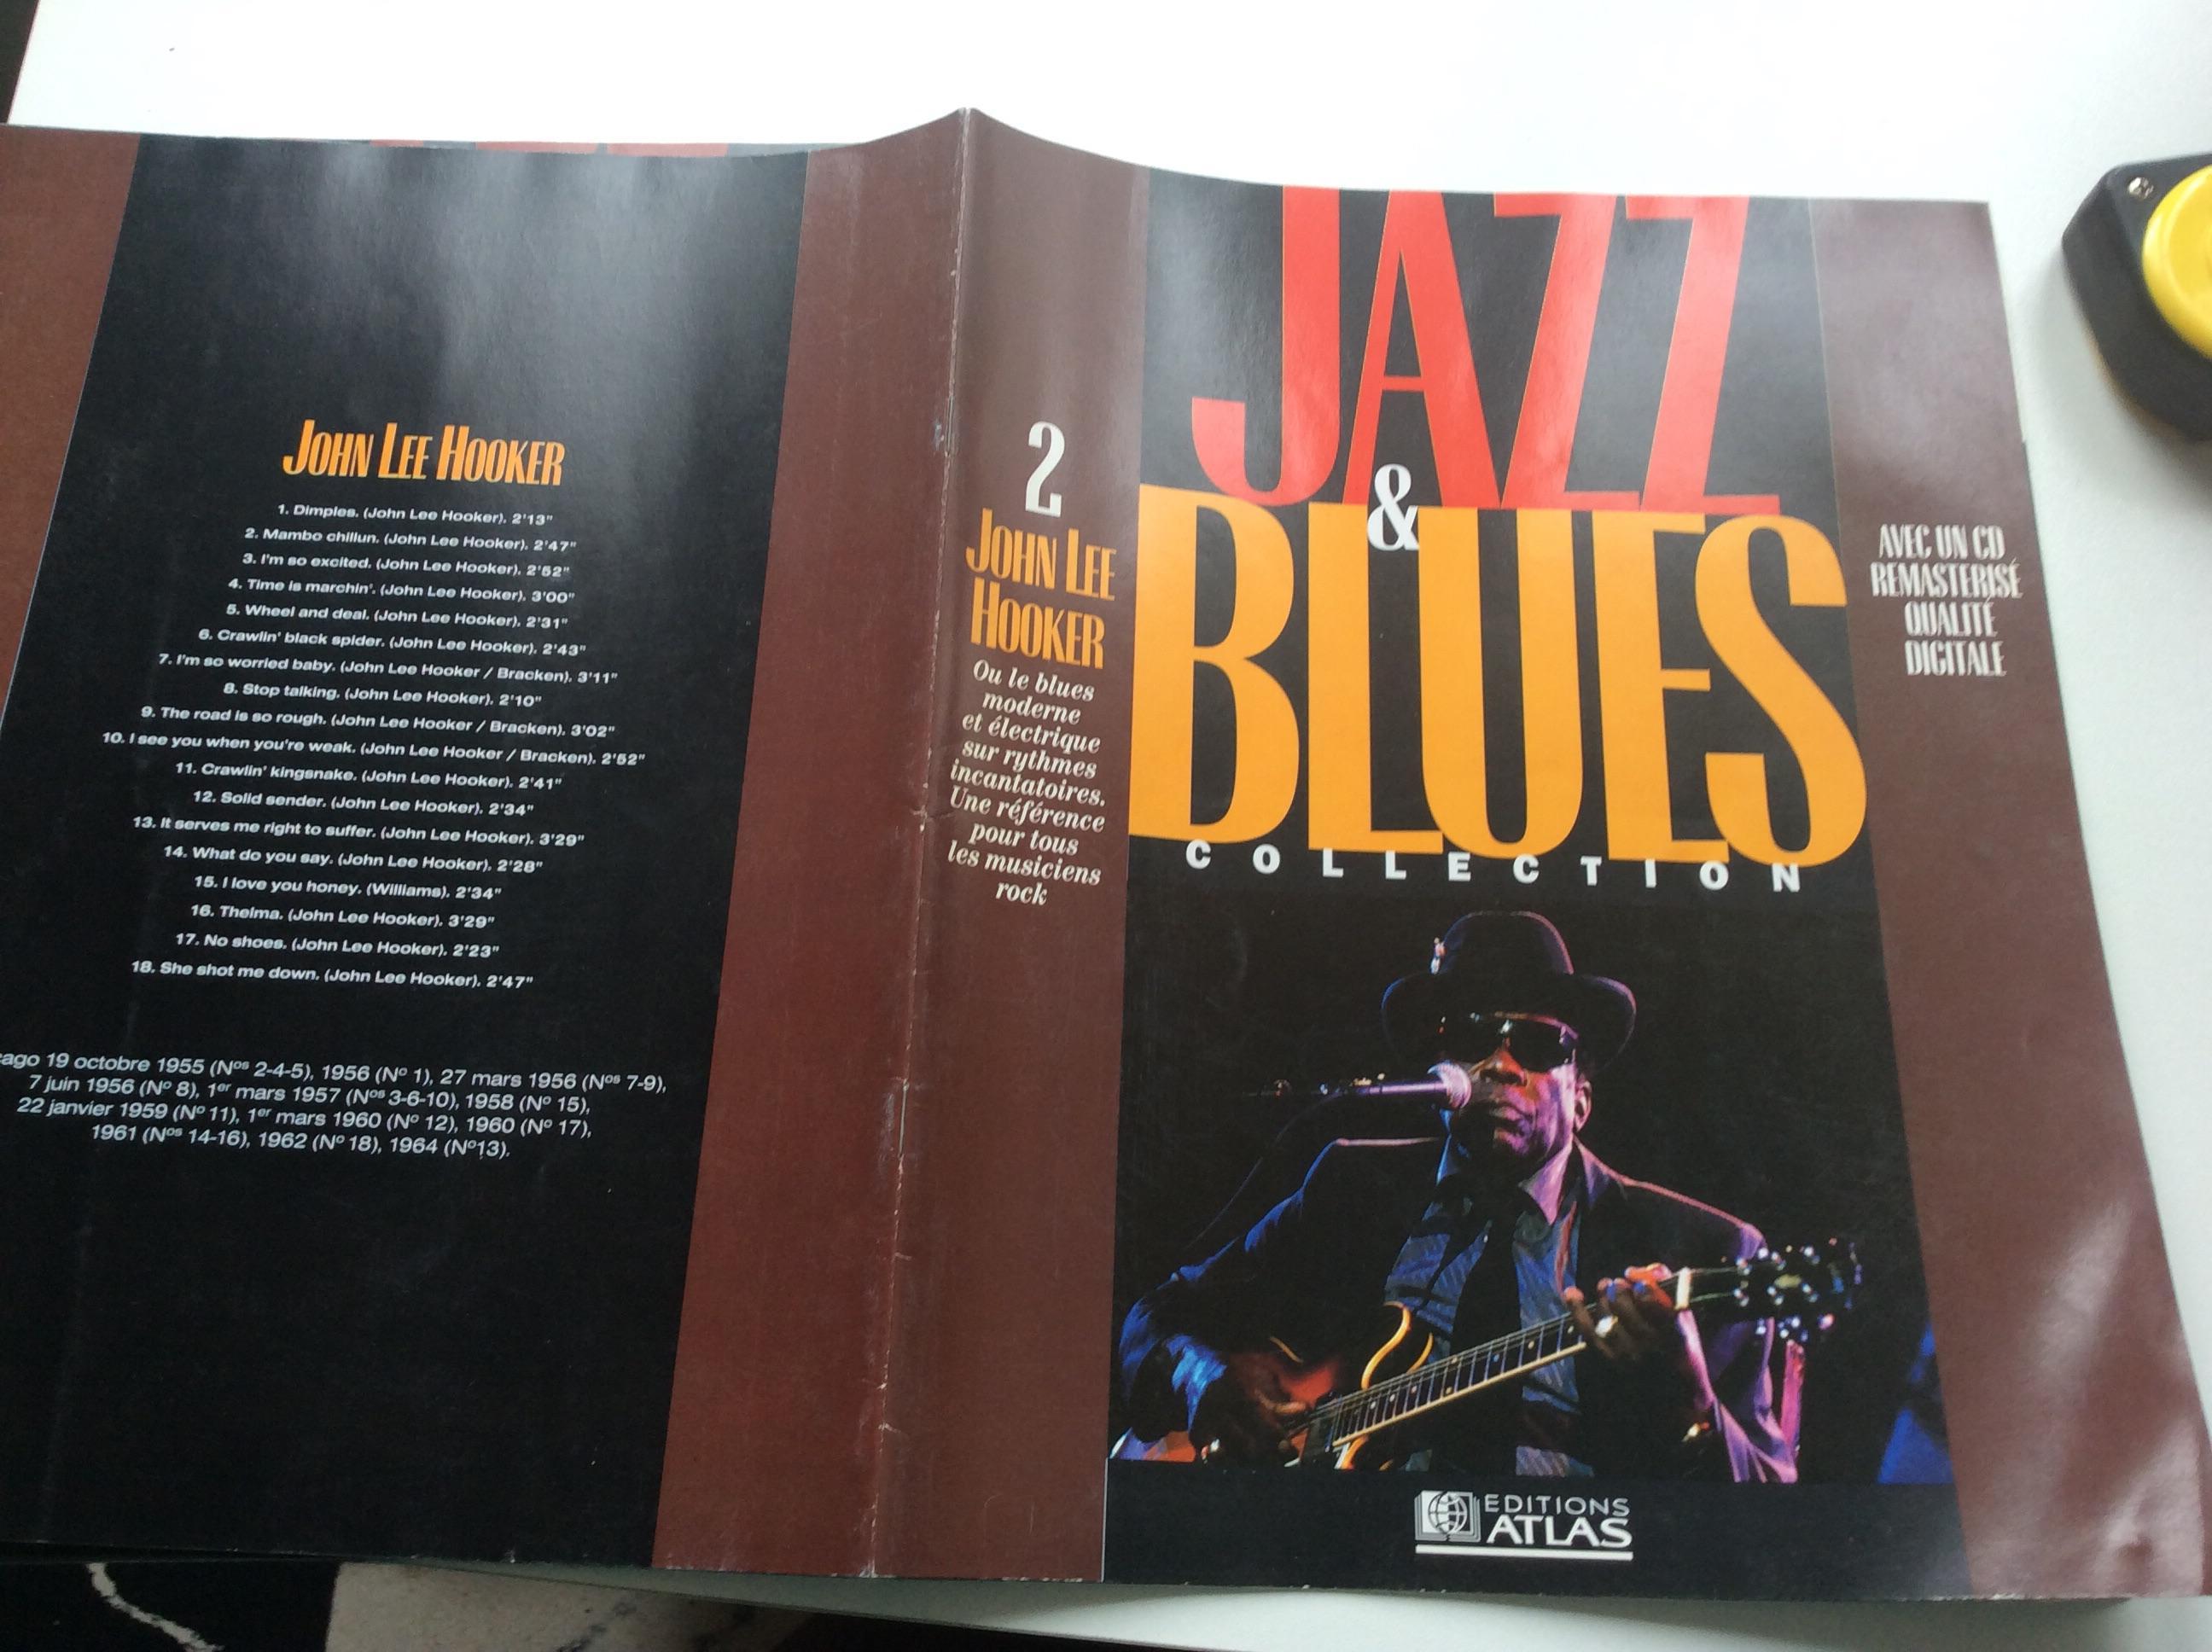 troc de troc fascicule jazz & blues collection n° 2 sans cd john lee hoover image 0